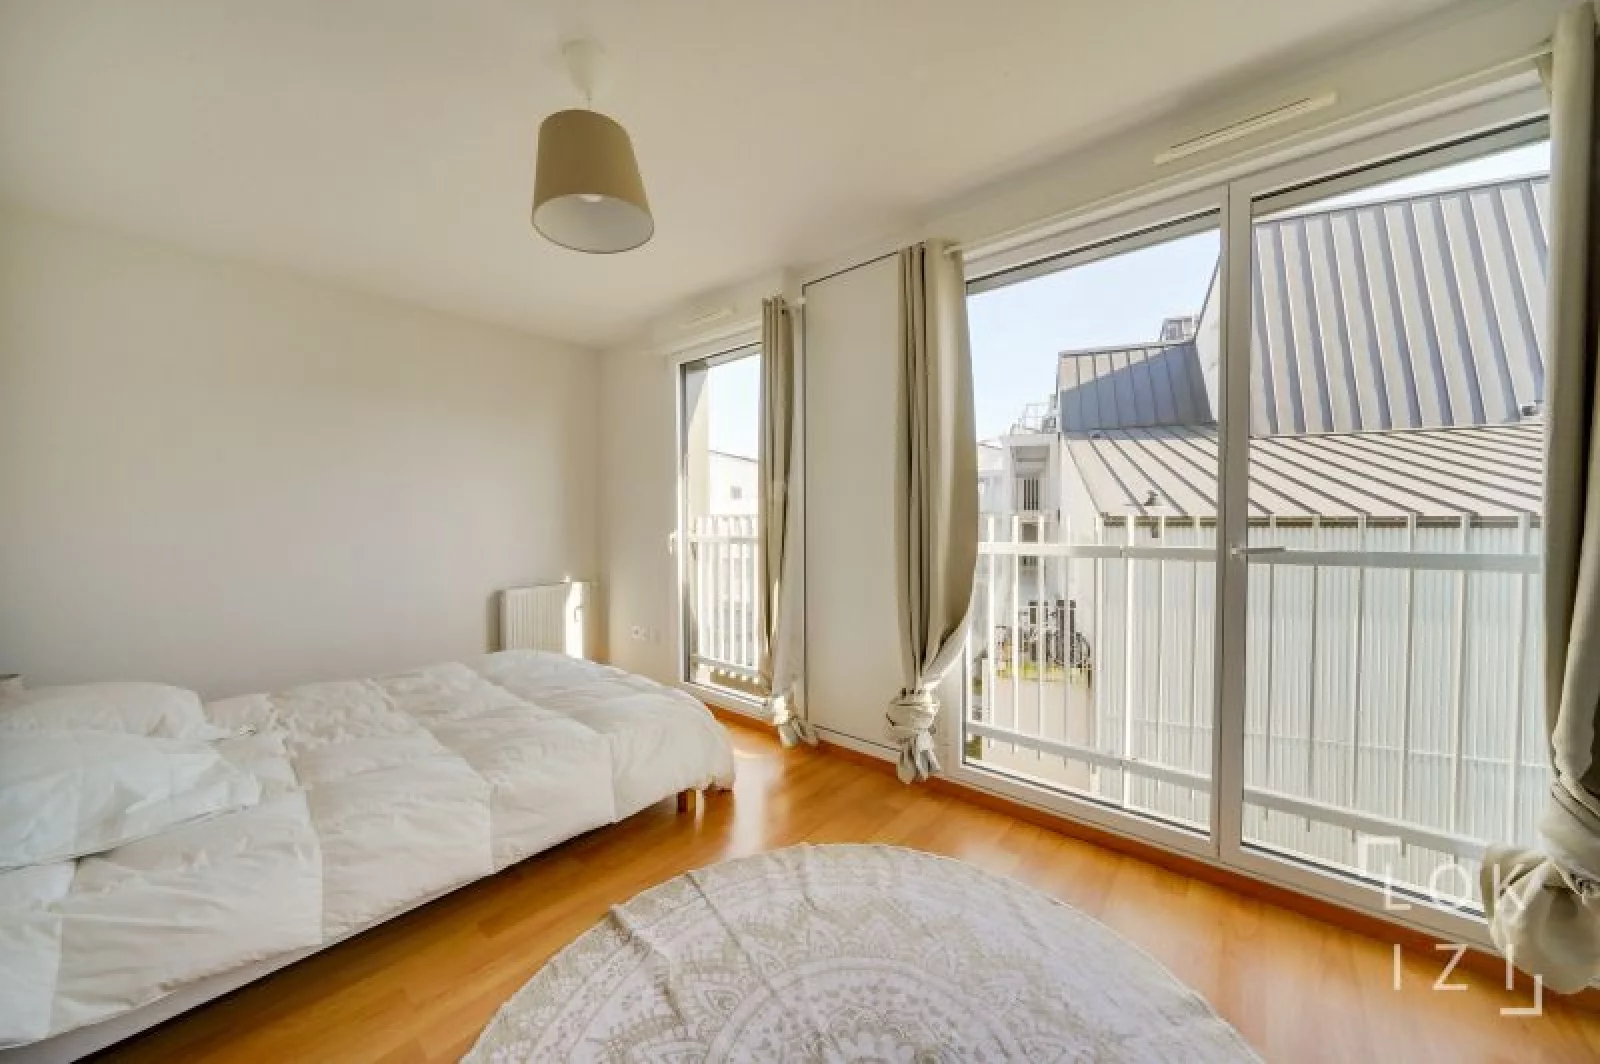 Location appartement meublé 4 pièces 101m² (Bordeaux - Bassins à flot)